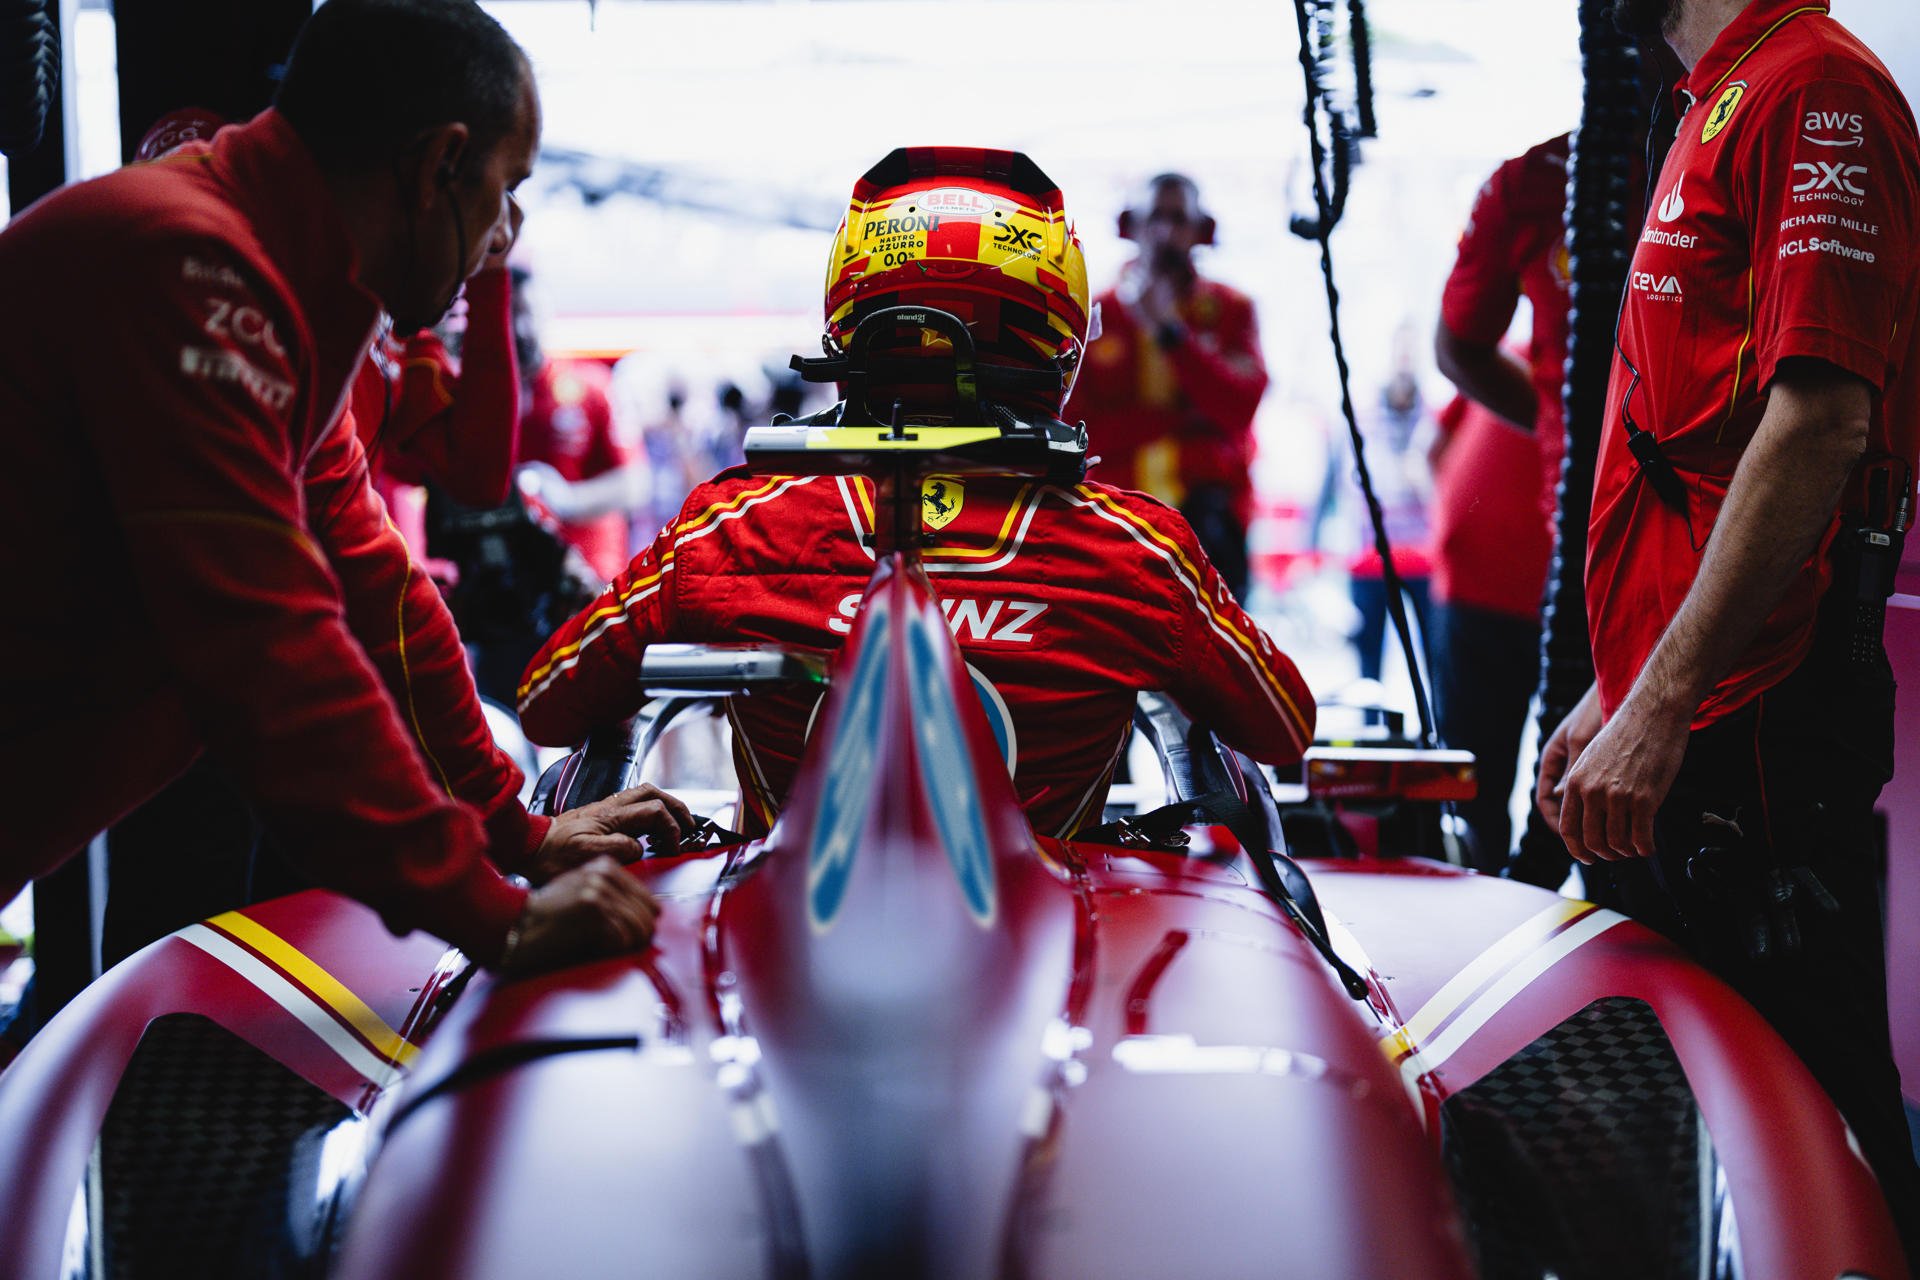 Ferrari celebra sus 70 años en EU con detalles en azul en uniformes y en monoplazas